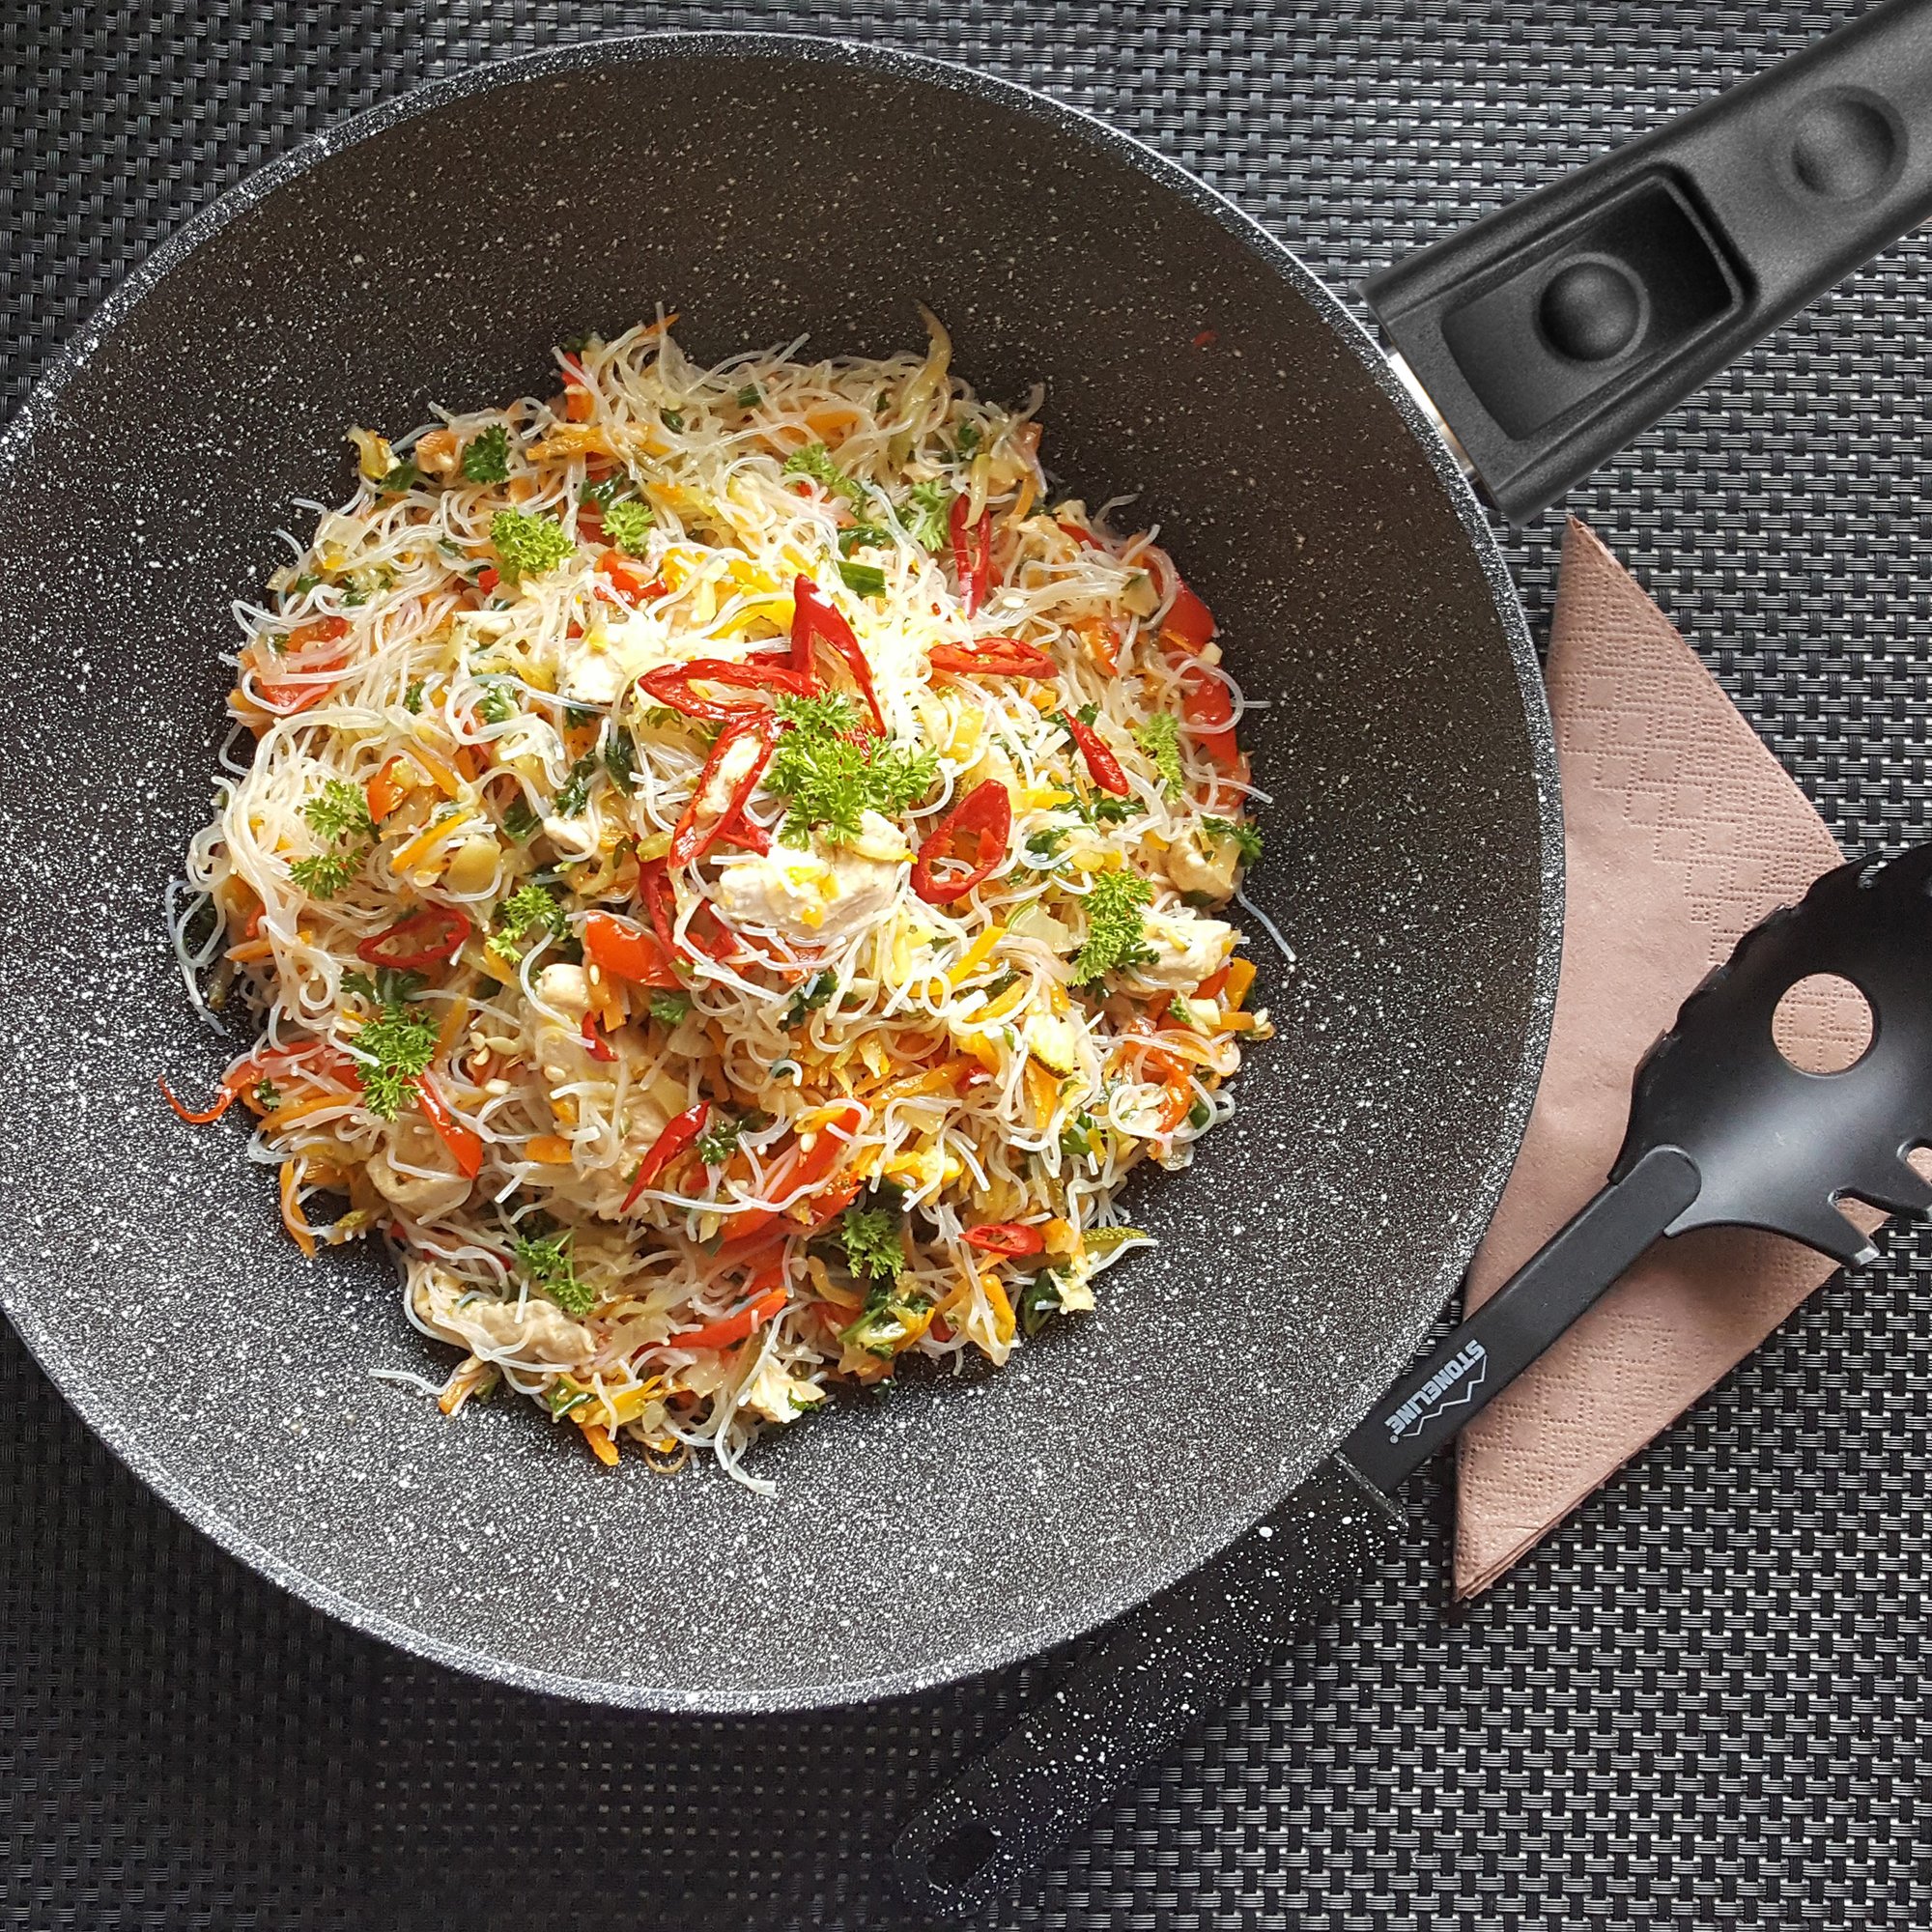 STONELINE® poêle wok 30 cm, Made in Germany, avec poignée amovible, convient pour l'induction